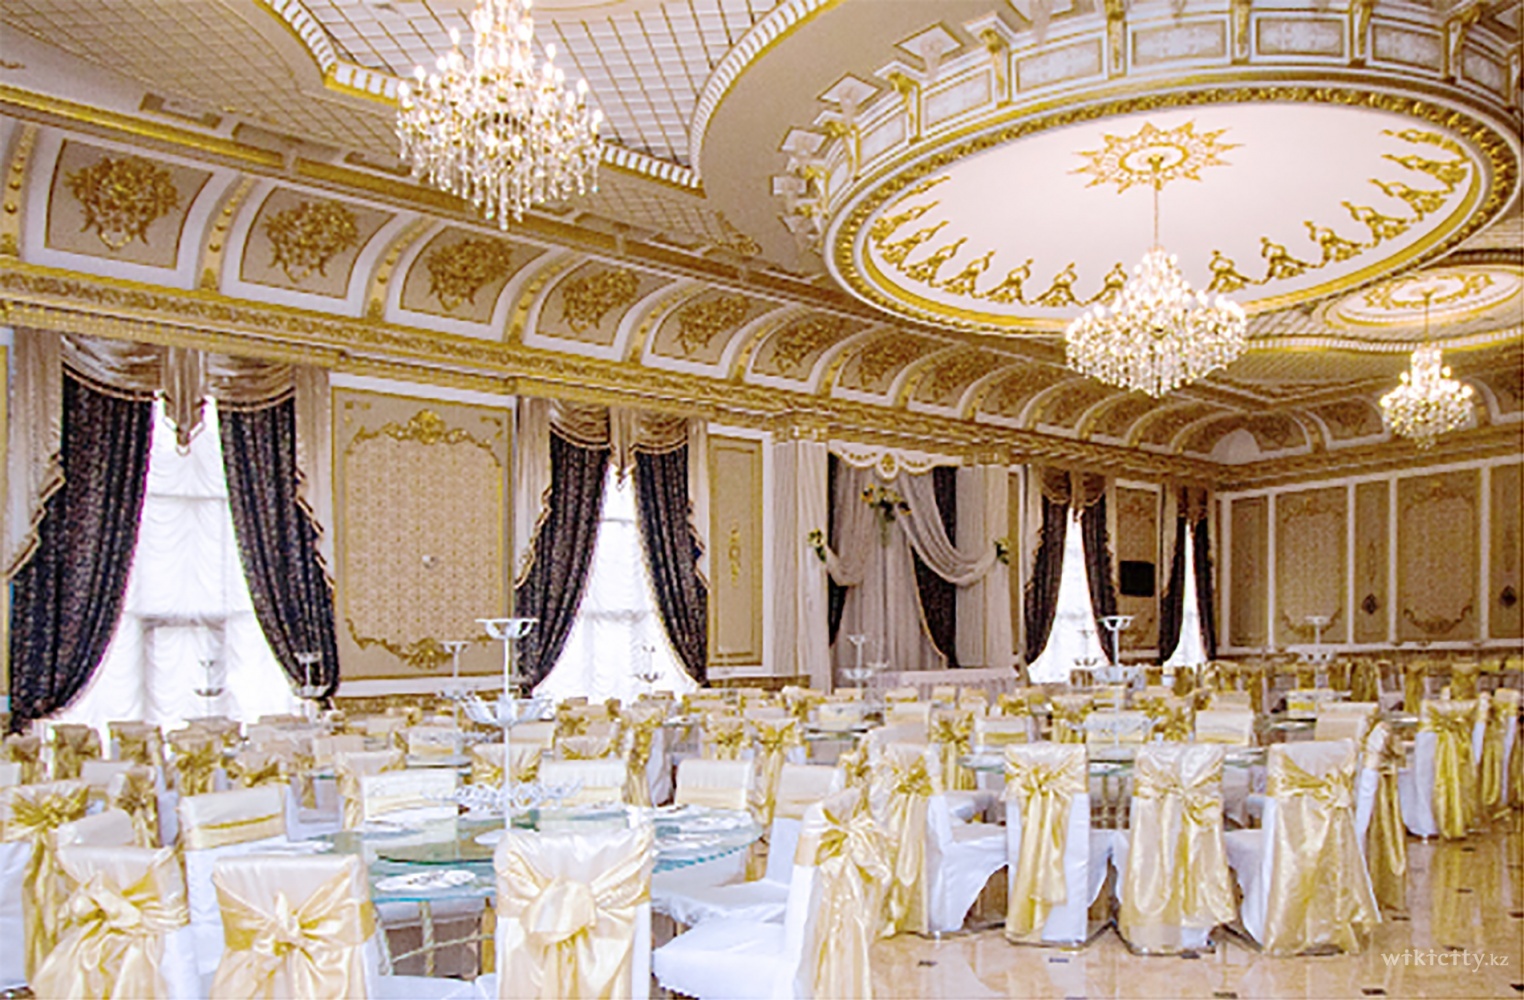 Фото Versailles - Алматы. Жемчужина “Versailles” — это огромный зал с панорамными окнами и богатым дврцовым убранством. Это место центр проведения громких праздников.
<br>
<br>Вместимость до 500 гостей.